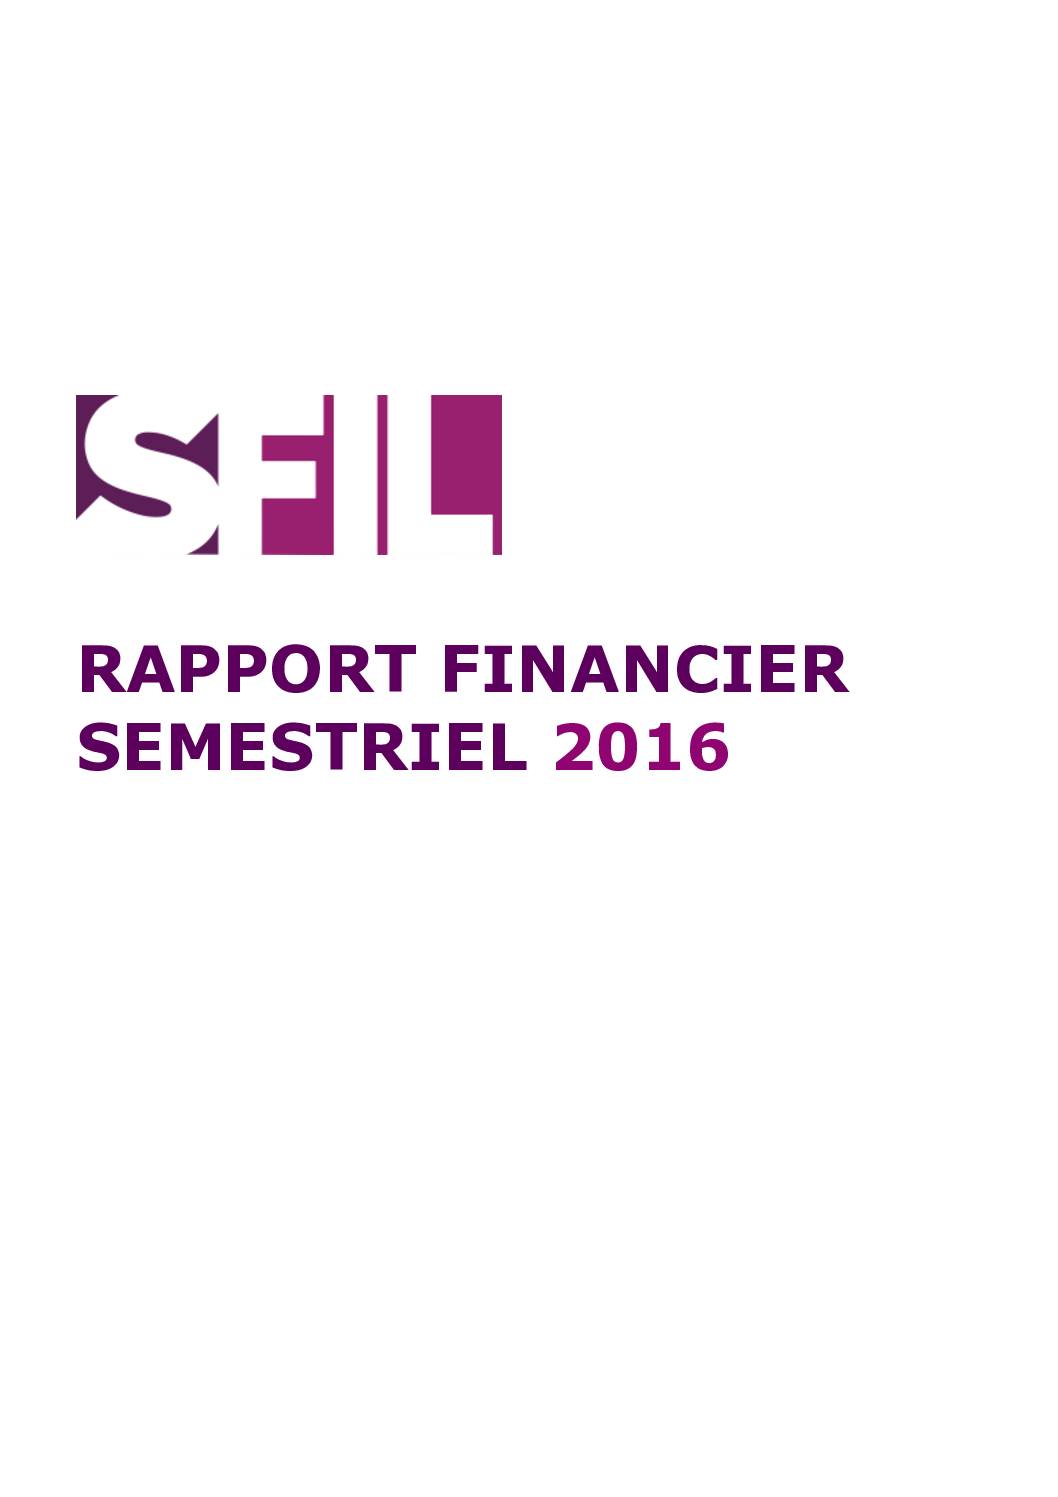 Rapport financier semestriel 2016